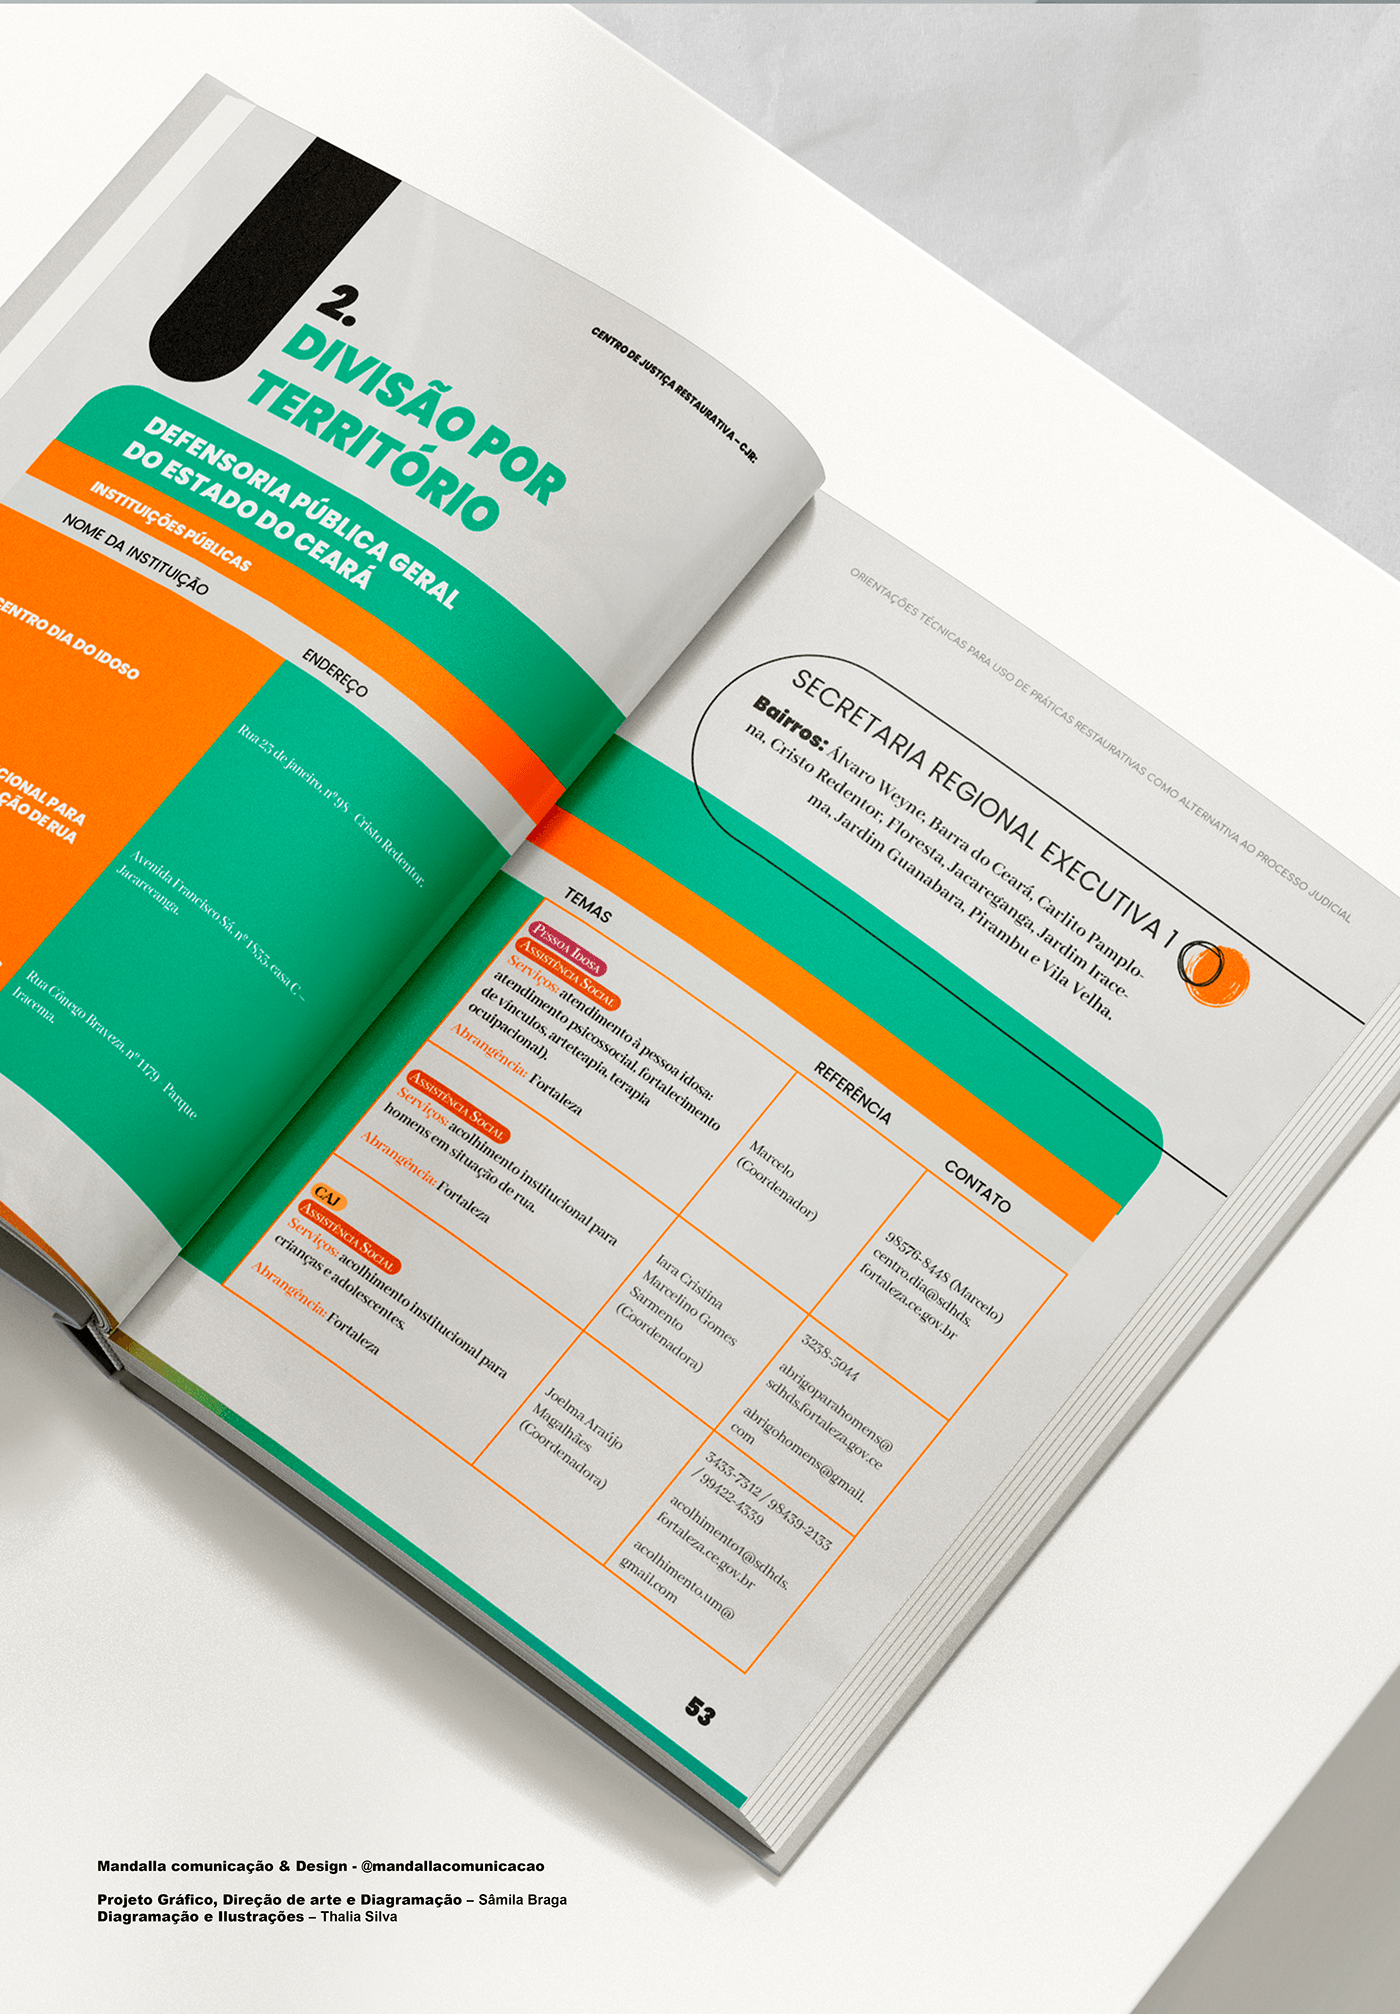 Ilustração design gráfico diagramação editorial design design editorial Livro Capa book editorial design 